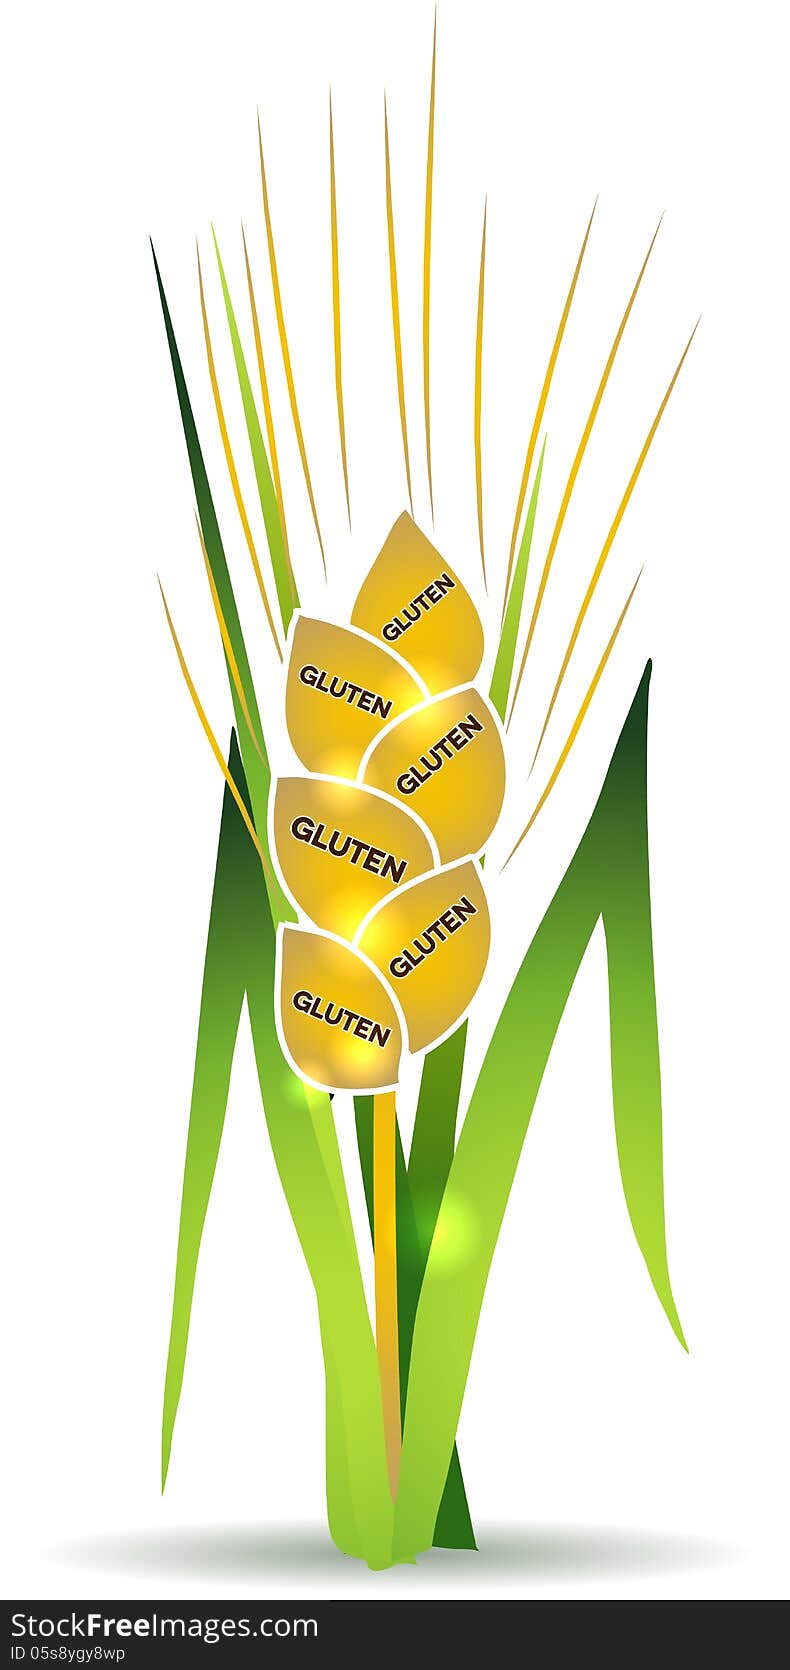 Wheat illustration with gluten marks on each grain. Wheat illustration with gluten marks on each grain